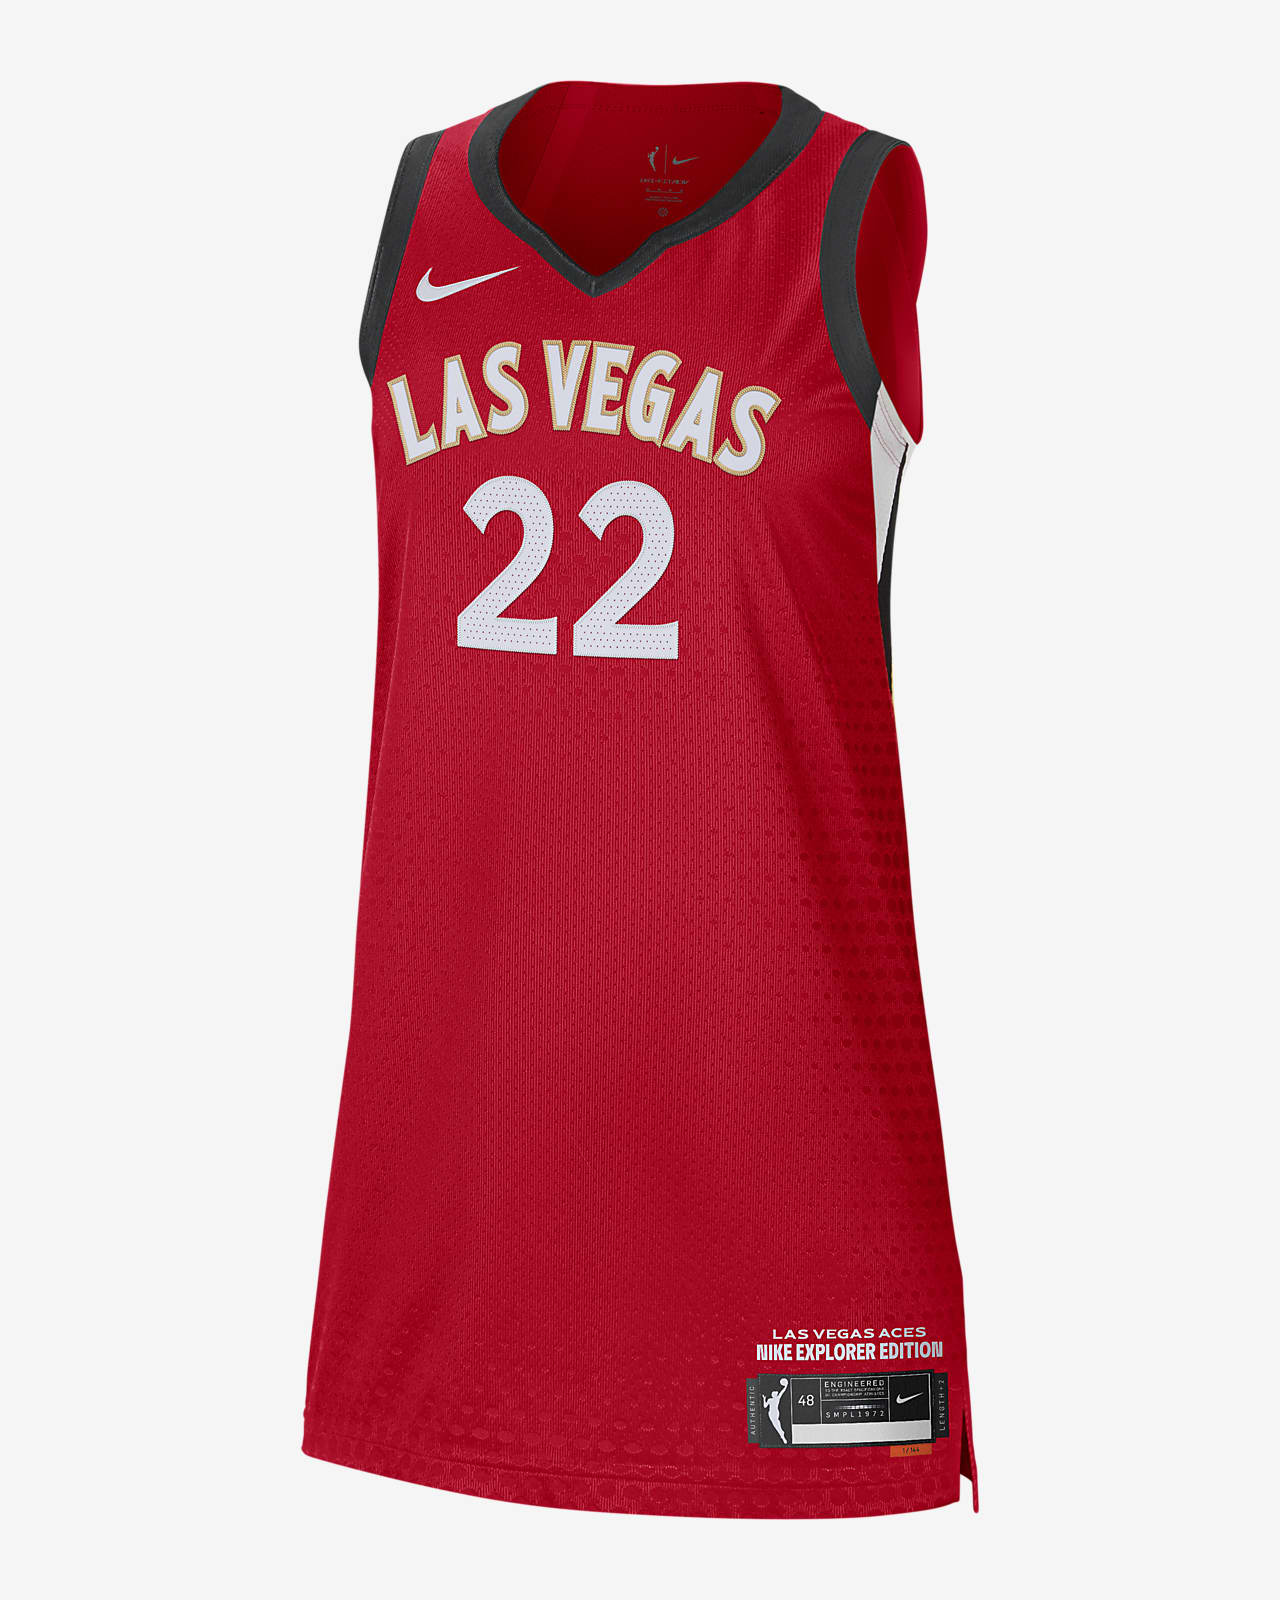 Nike, WNBA unveil new Las Vegas Aces, other teams uniforms for 2021